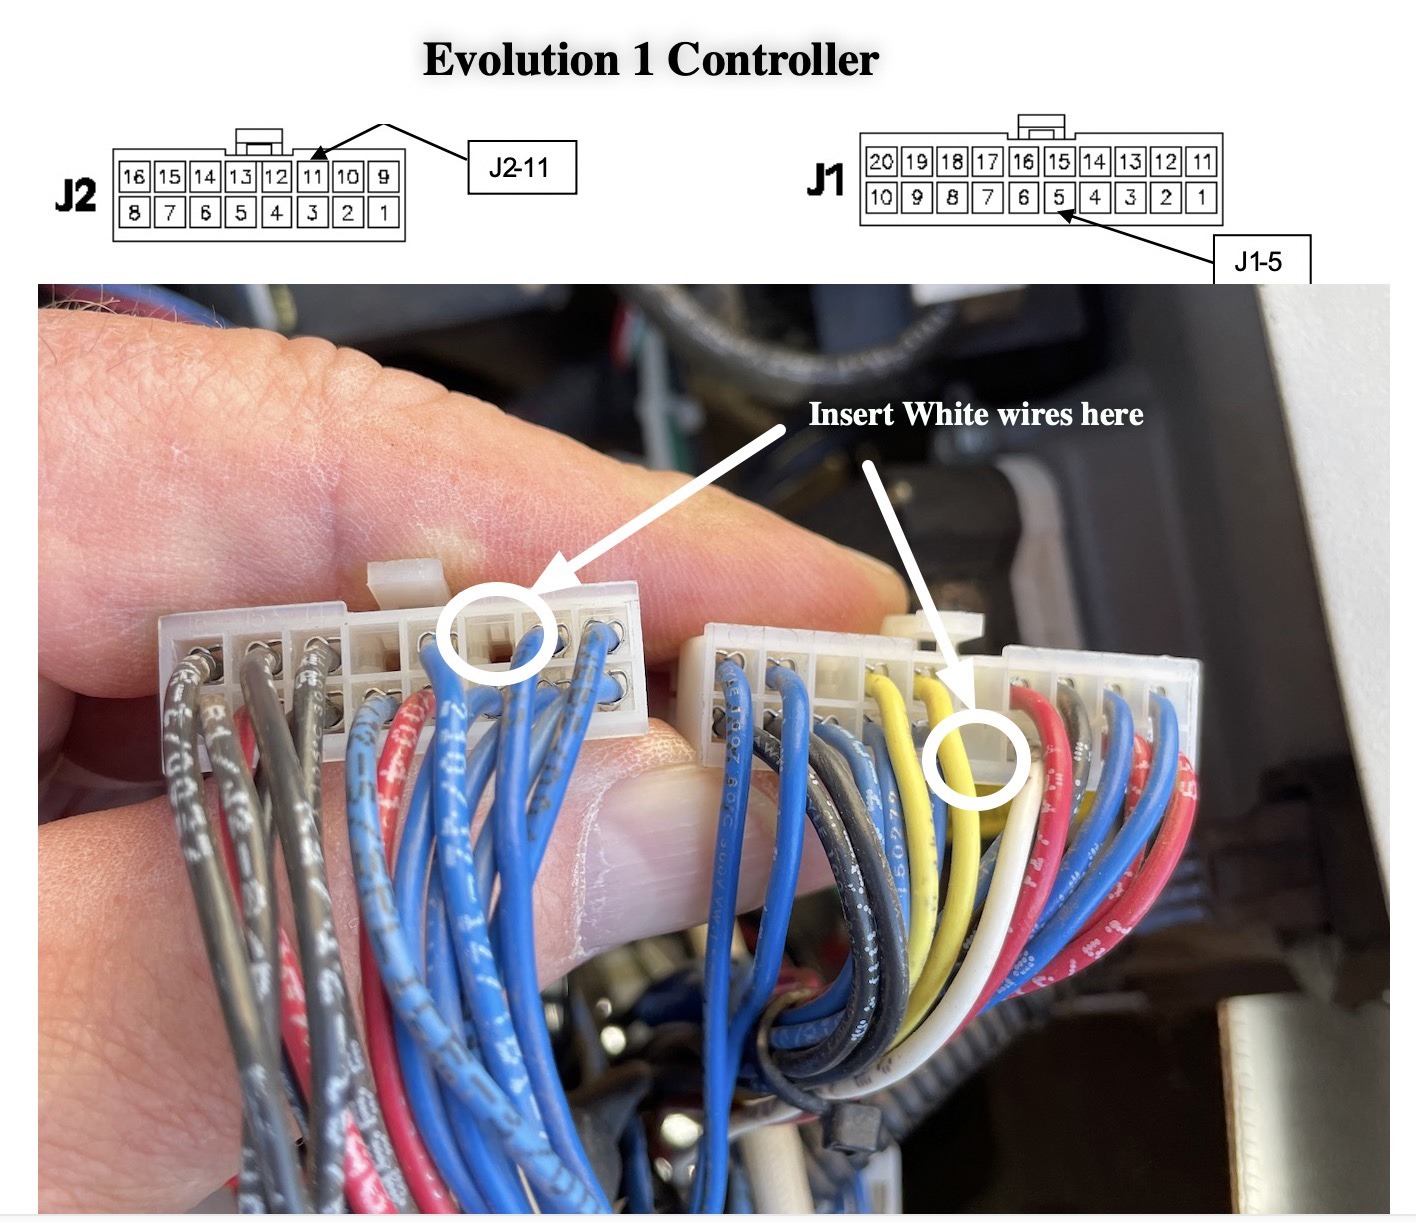 Adding gen start wires to Generac Evolution 1 controller